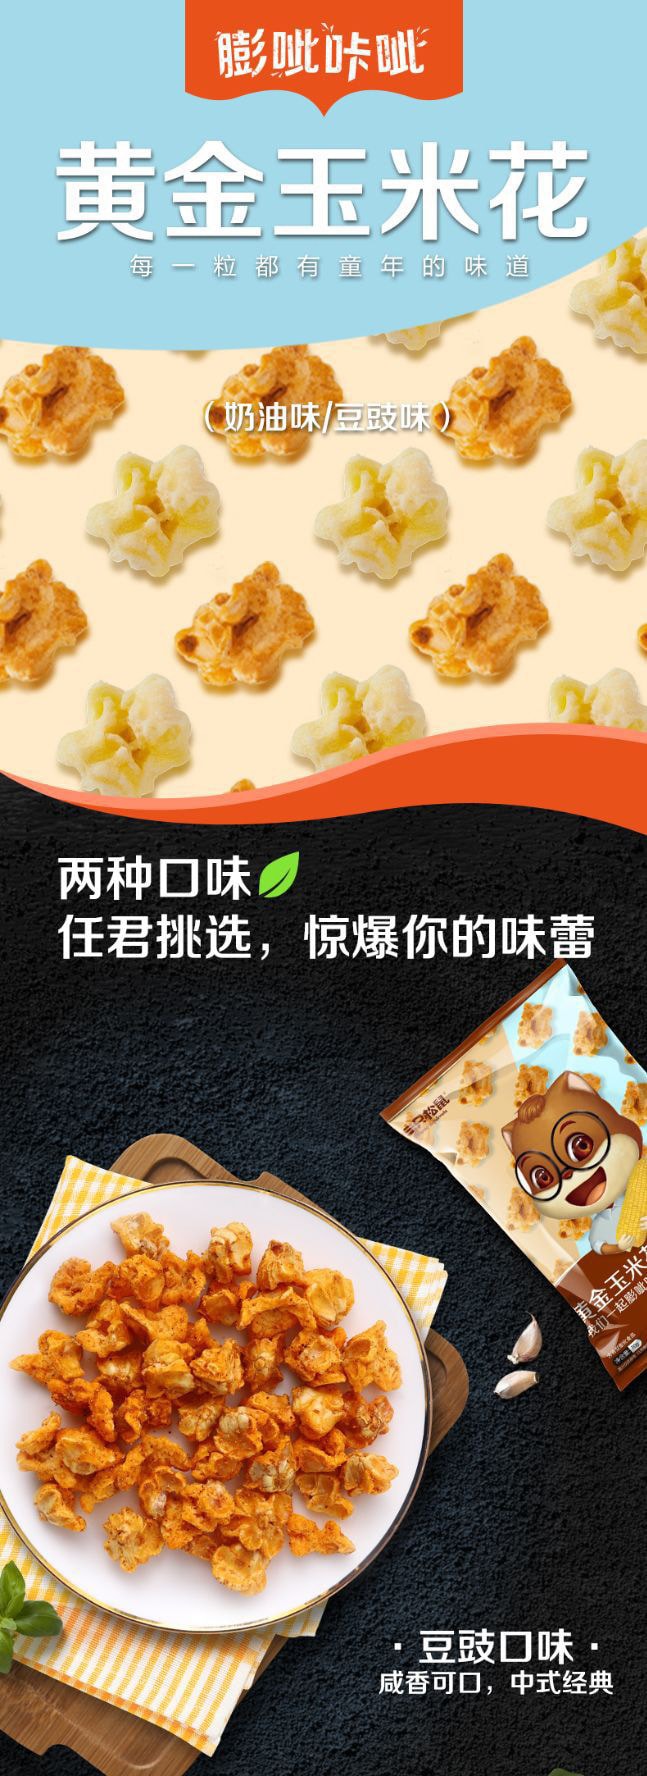 【中国直邮】三只松鼠 黄金玉米花-奶油味 休闲零食膨化爆米花奶油口味 70g/袋